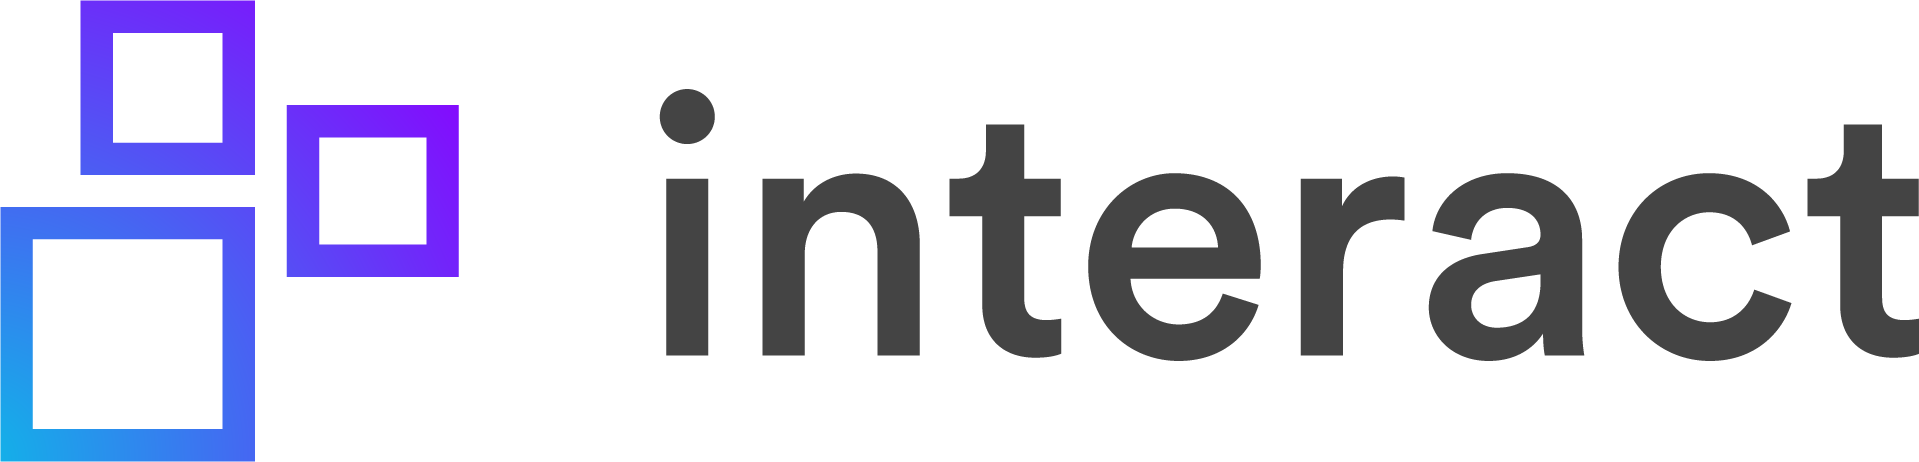 Logo - Horizontal